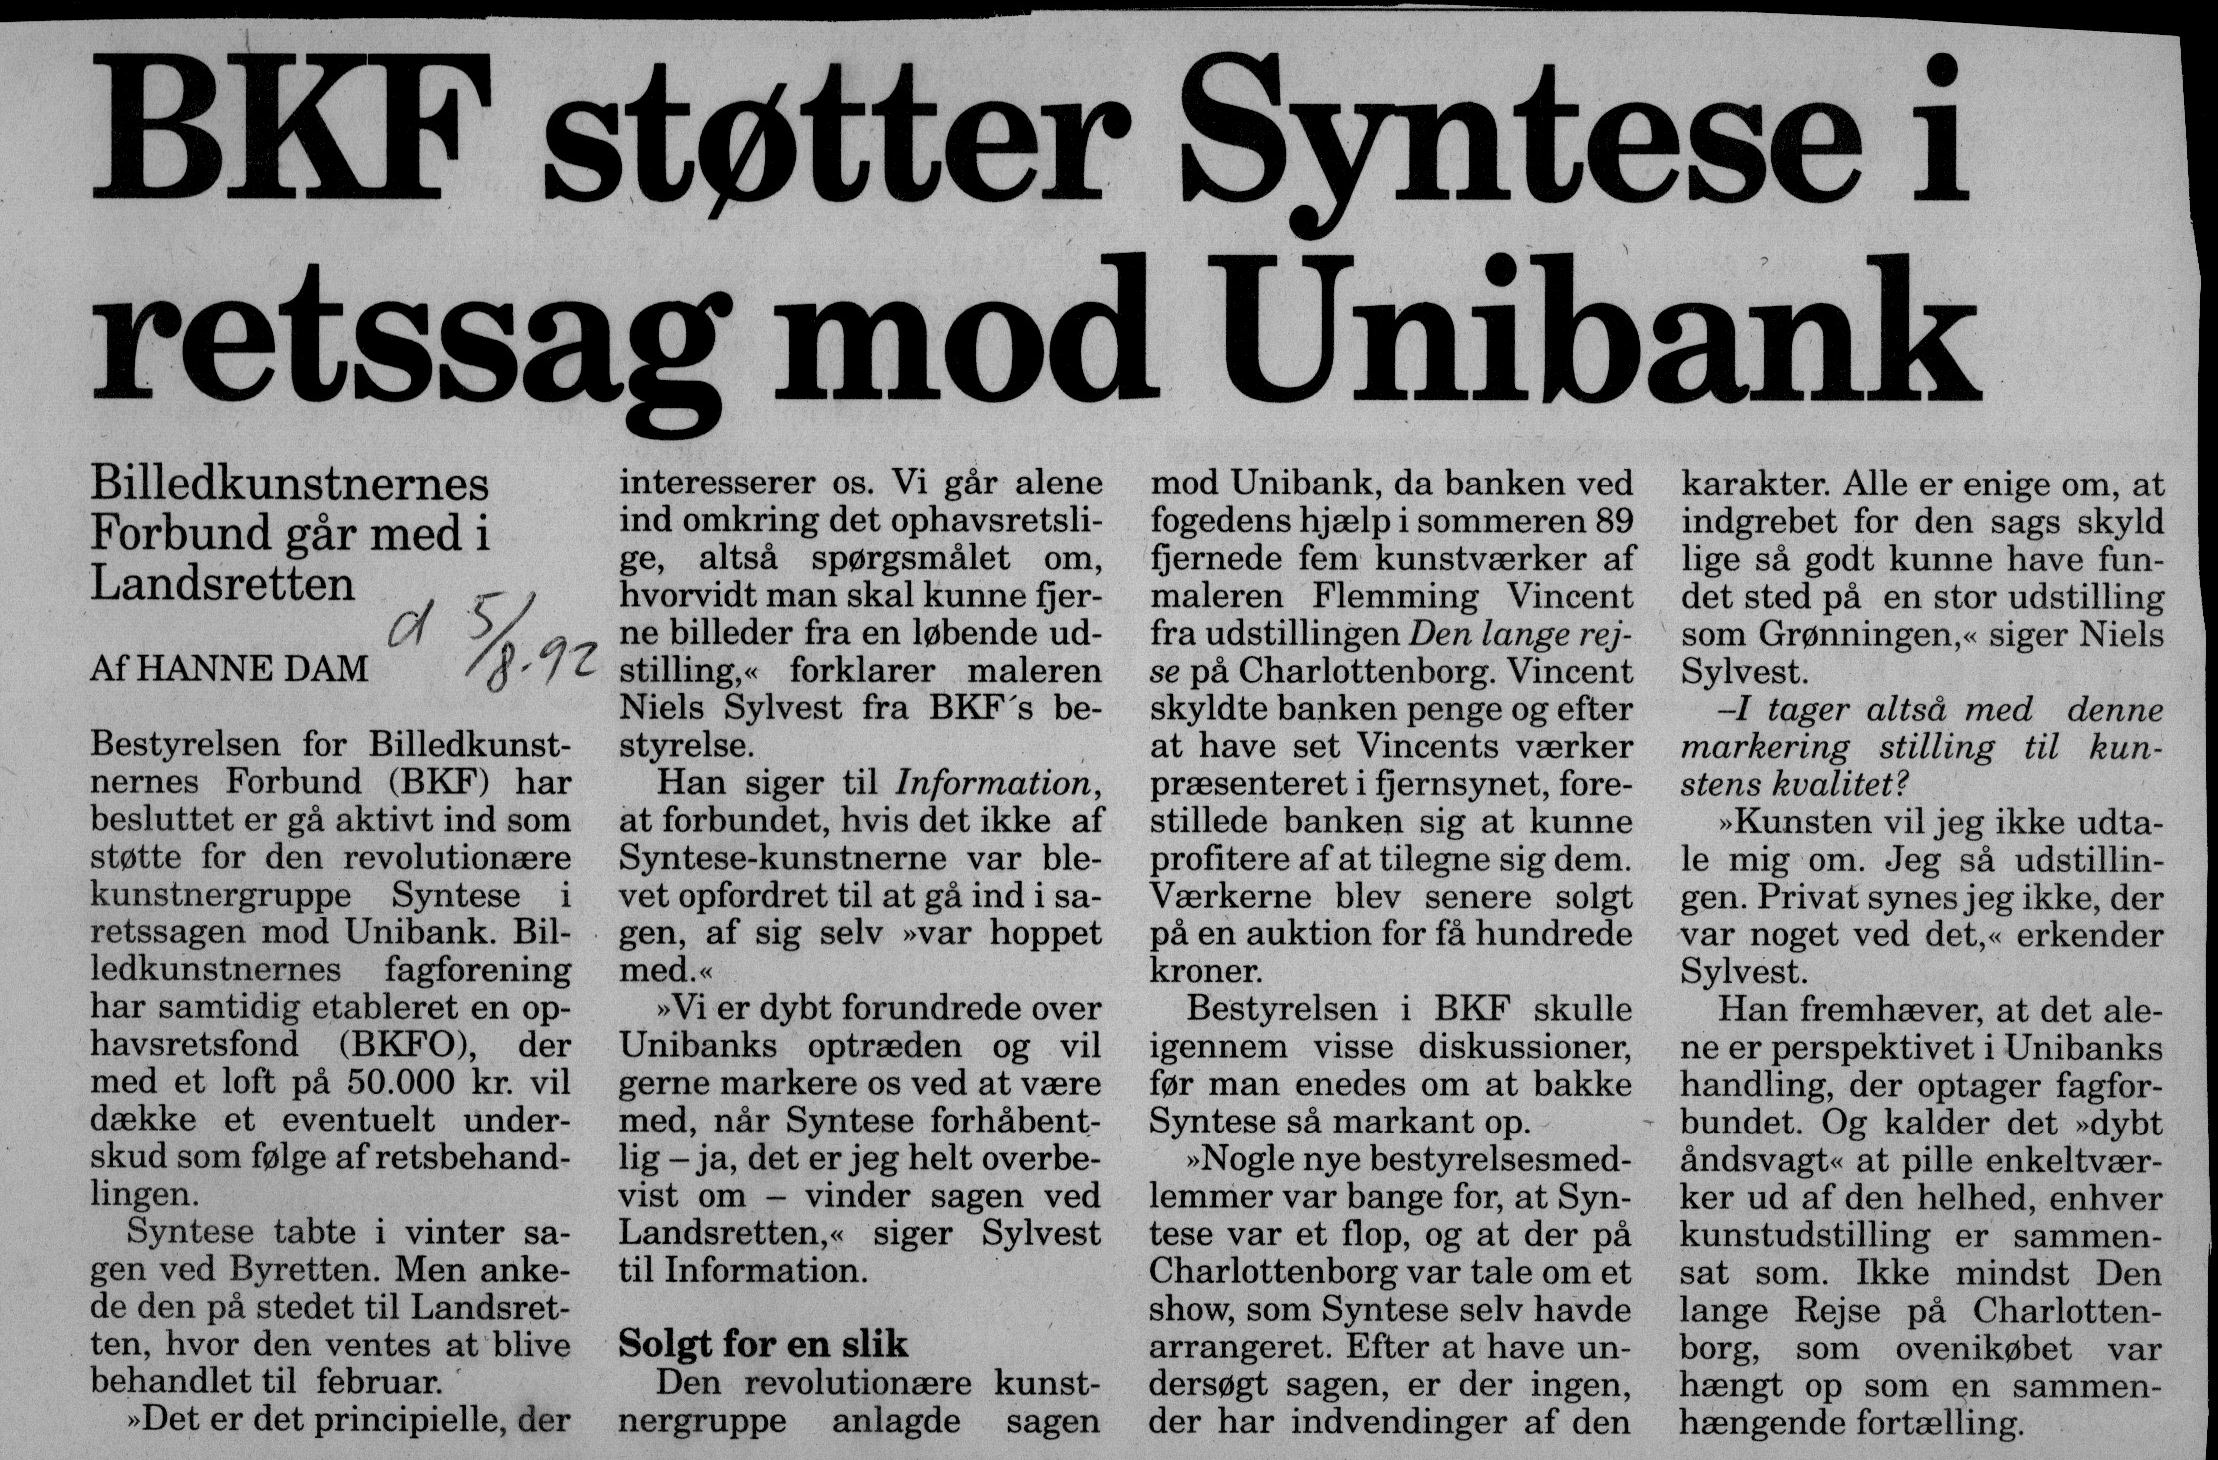 BKF støtter Syntese i retssag mod Unibank. Omtale (Retssag. Den lange rejse, Charlottenborg, København 1989). Hanne Dam. Information.